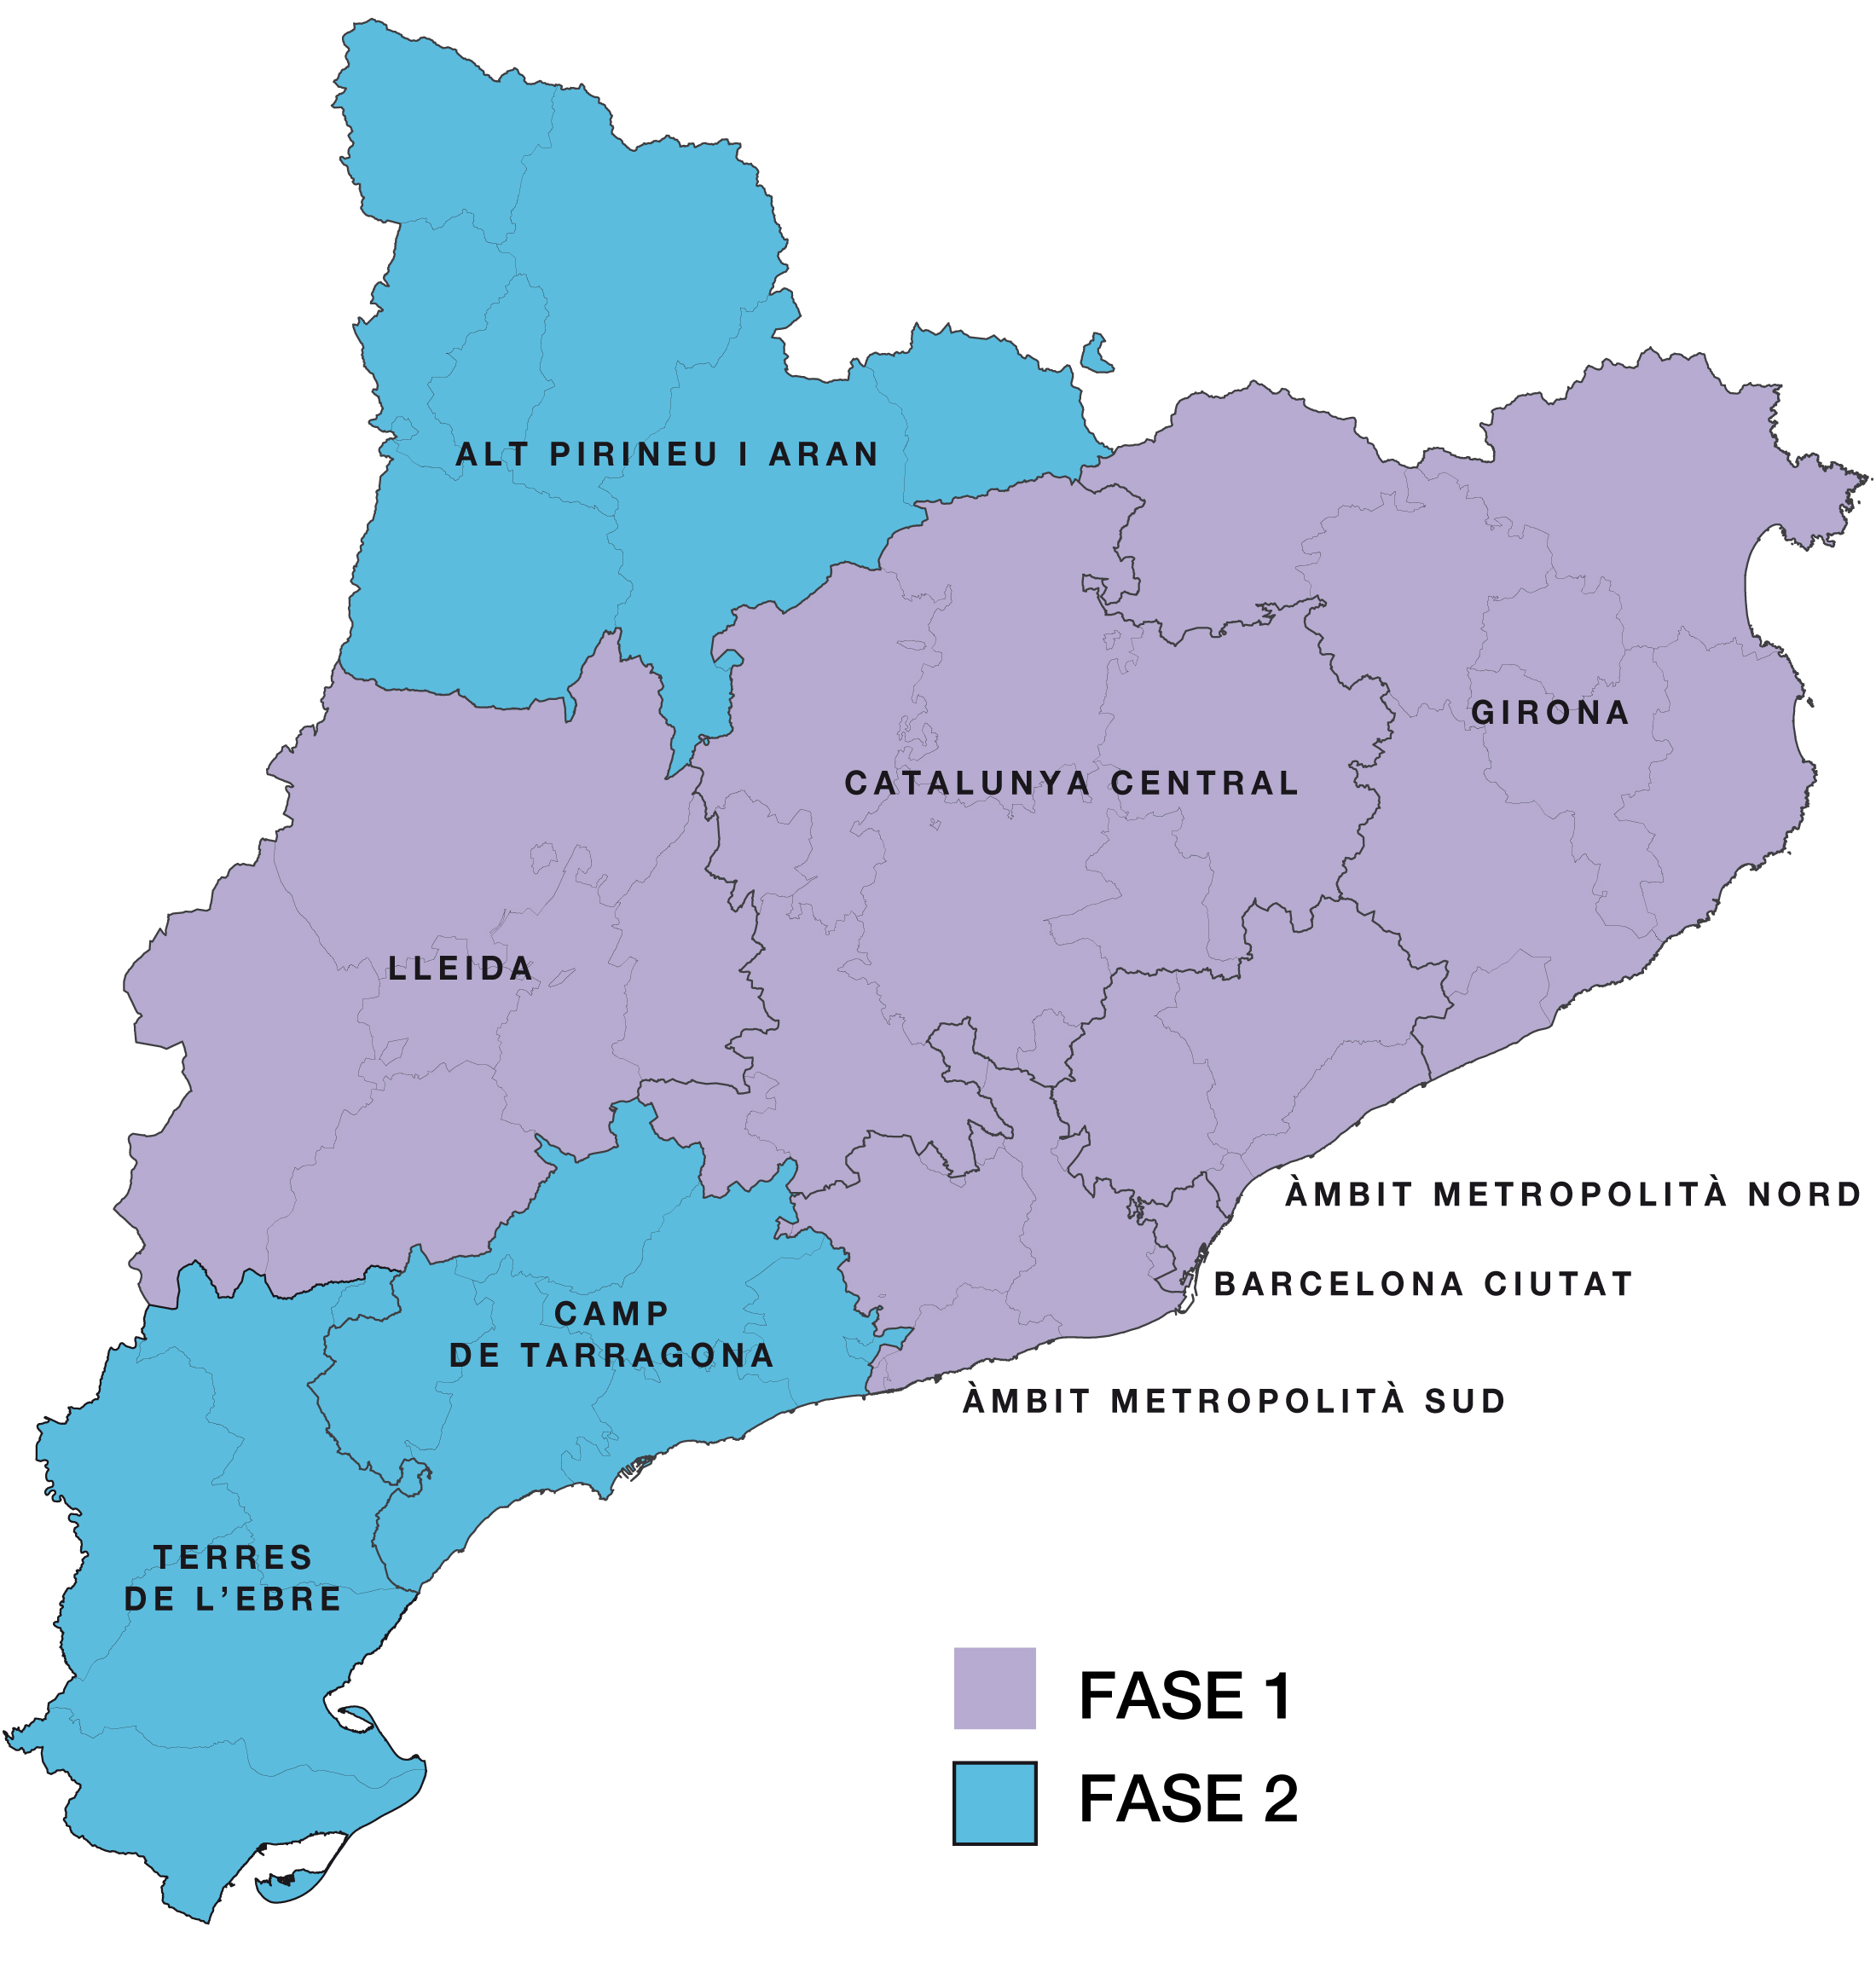 Proposta territorial de desconfinament gradual, a partir del 25 de maig